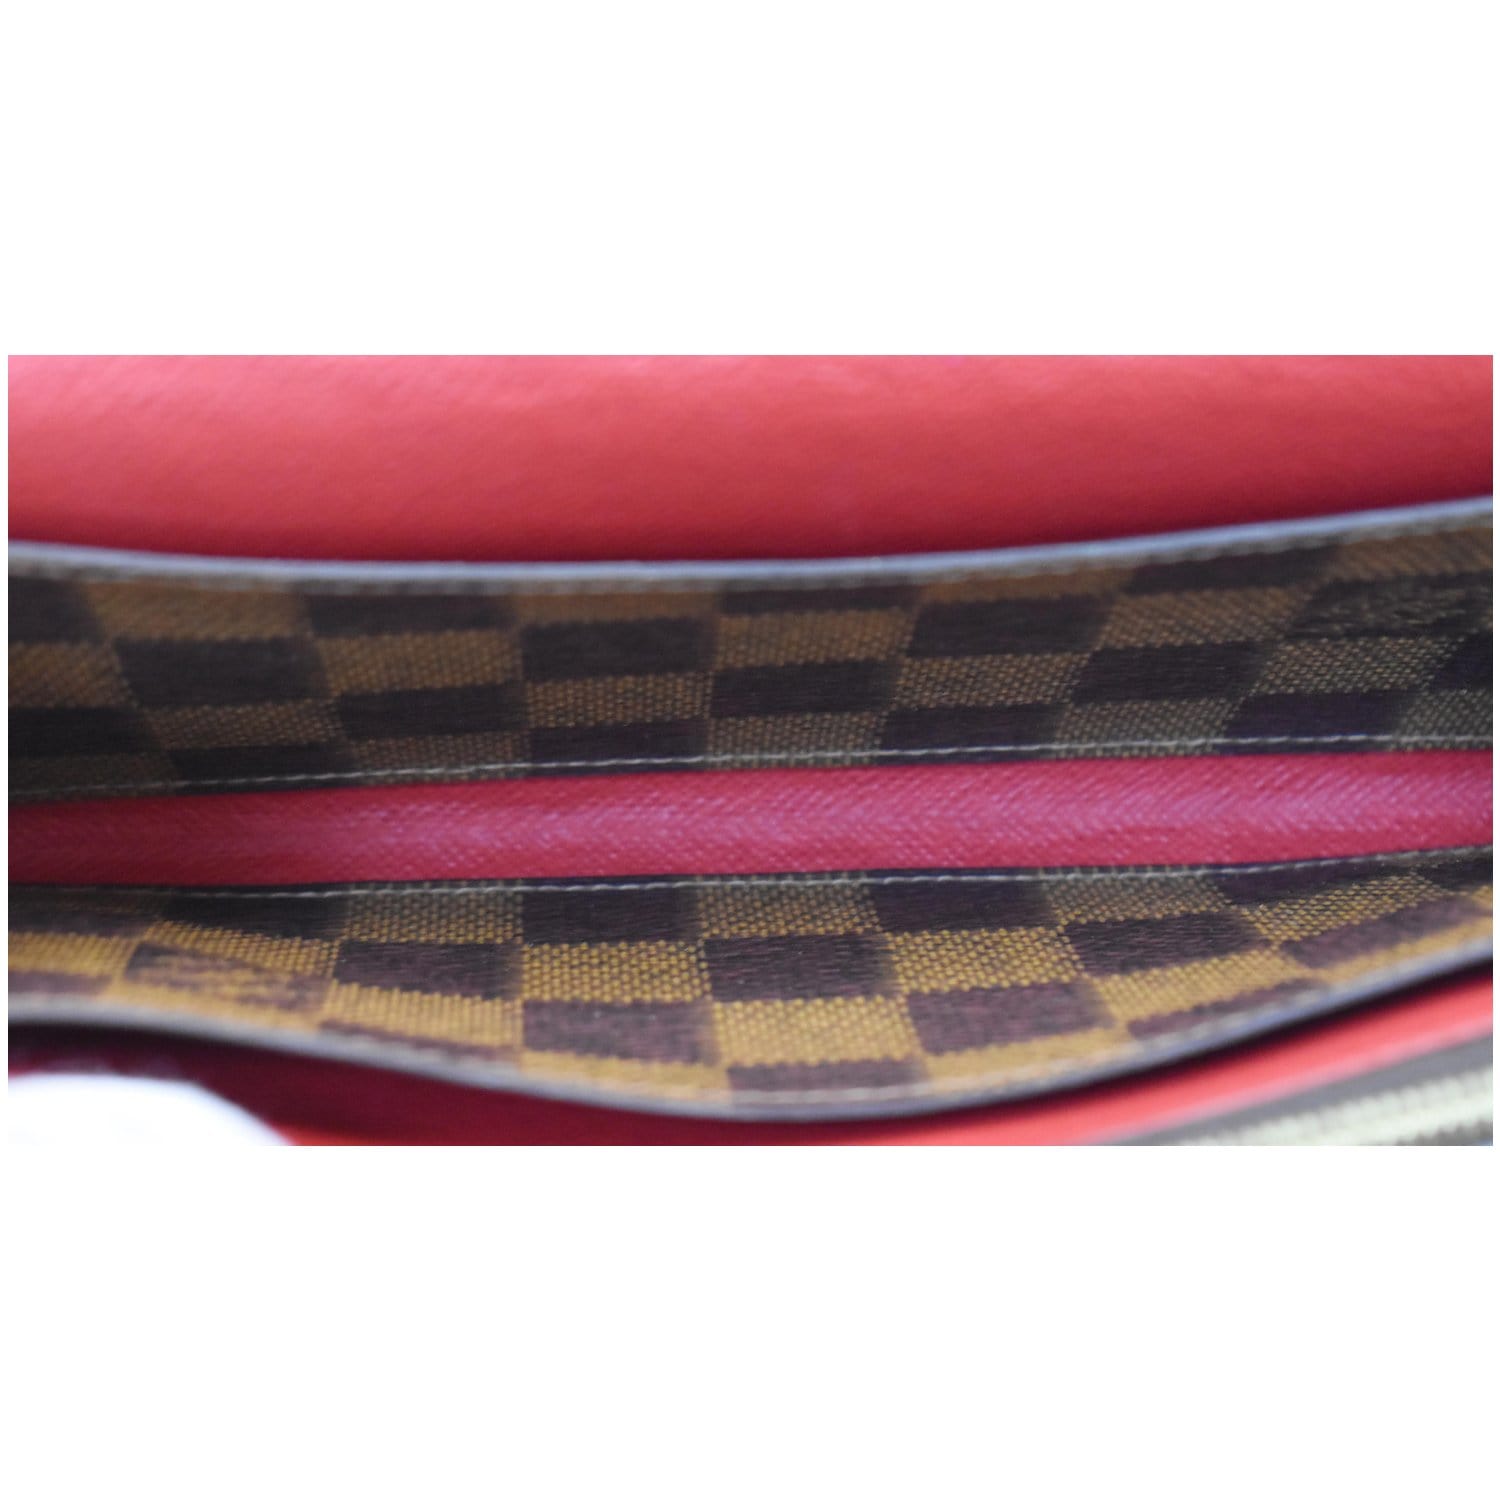 Louis Vuitton Brown Josephine Damier Ebene Red Wallet - MyDesignerly